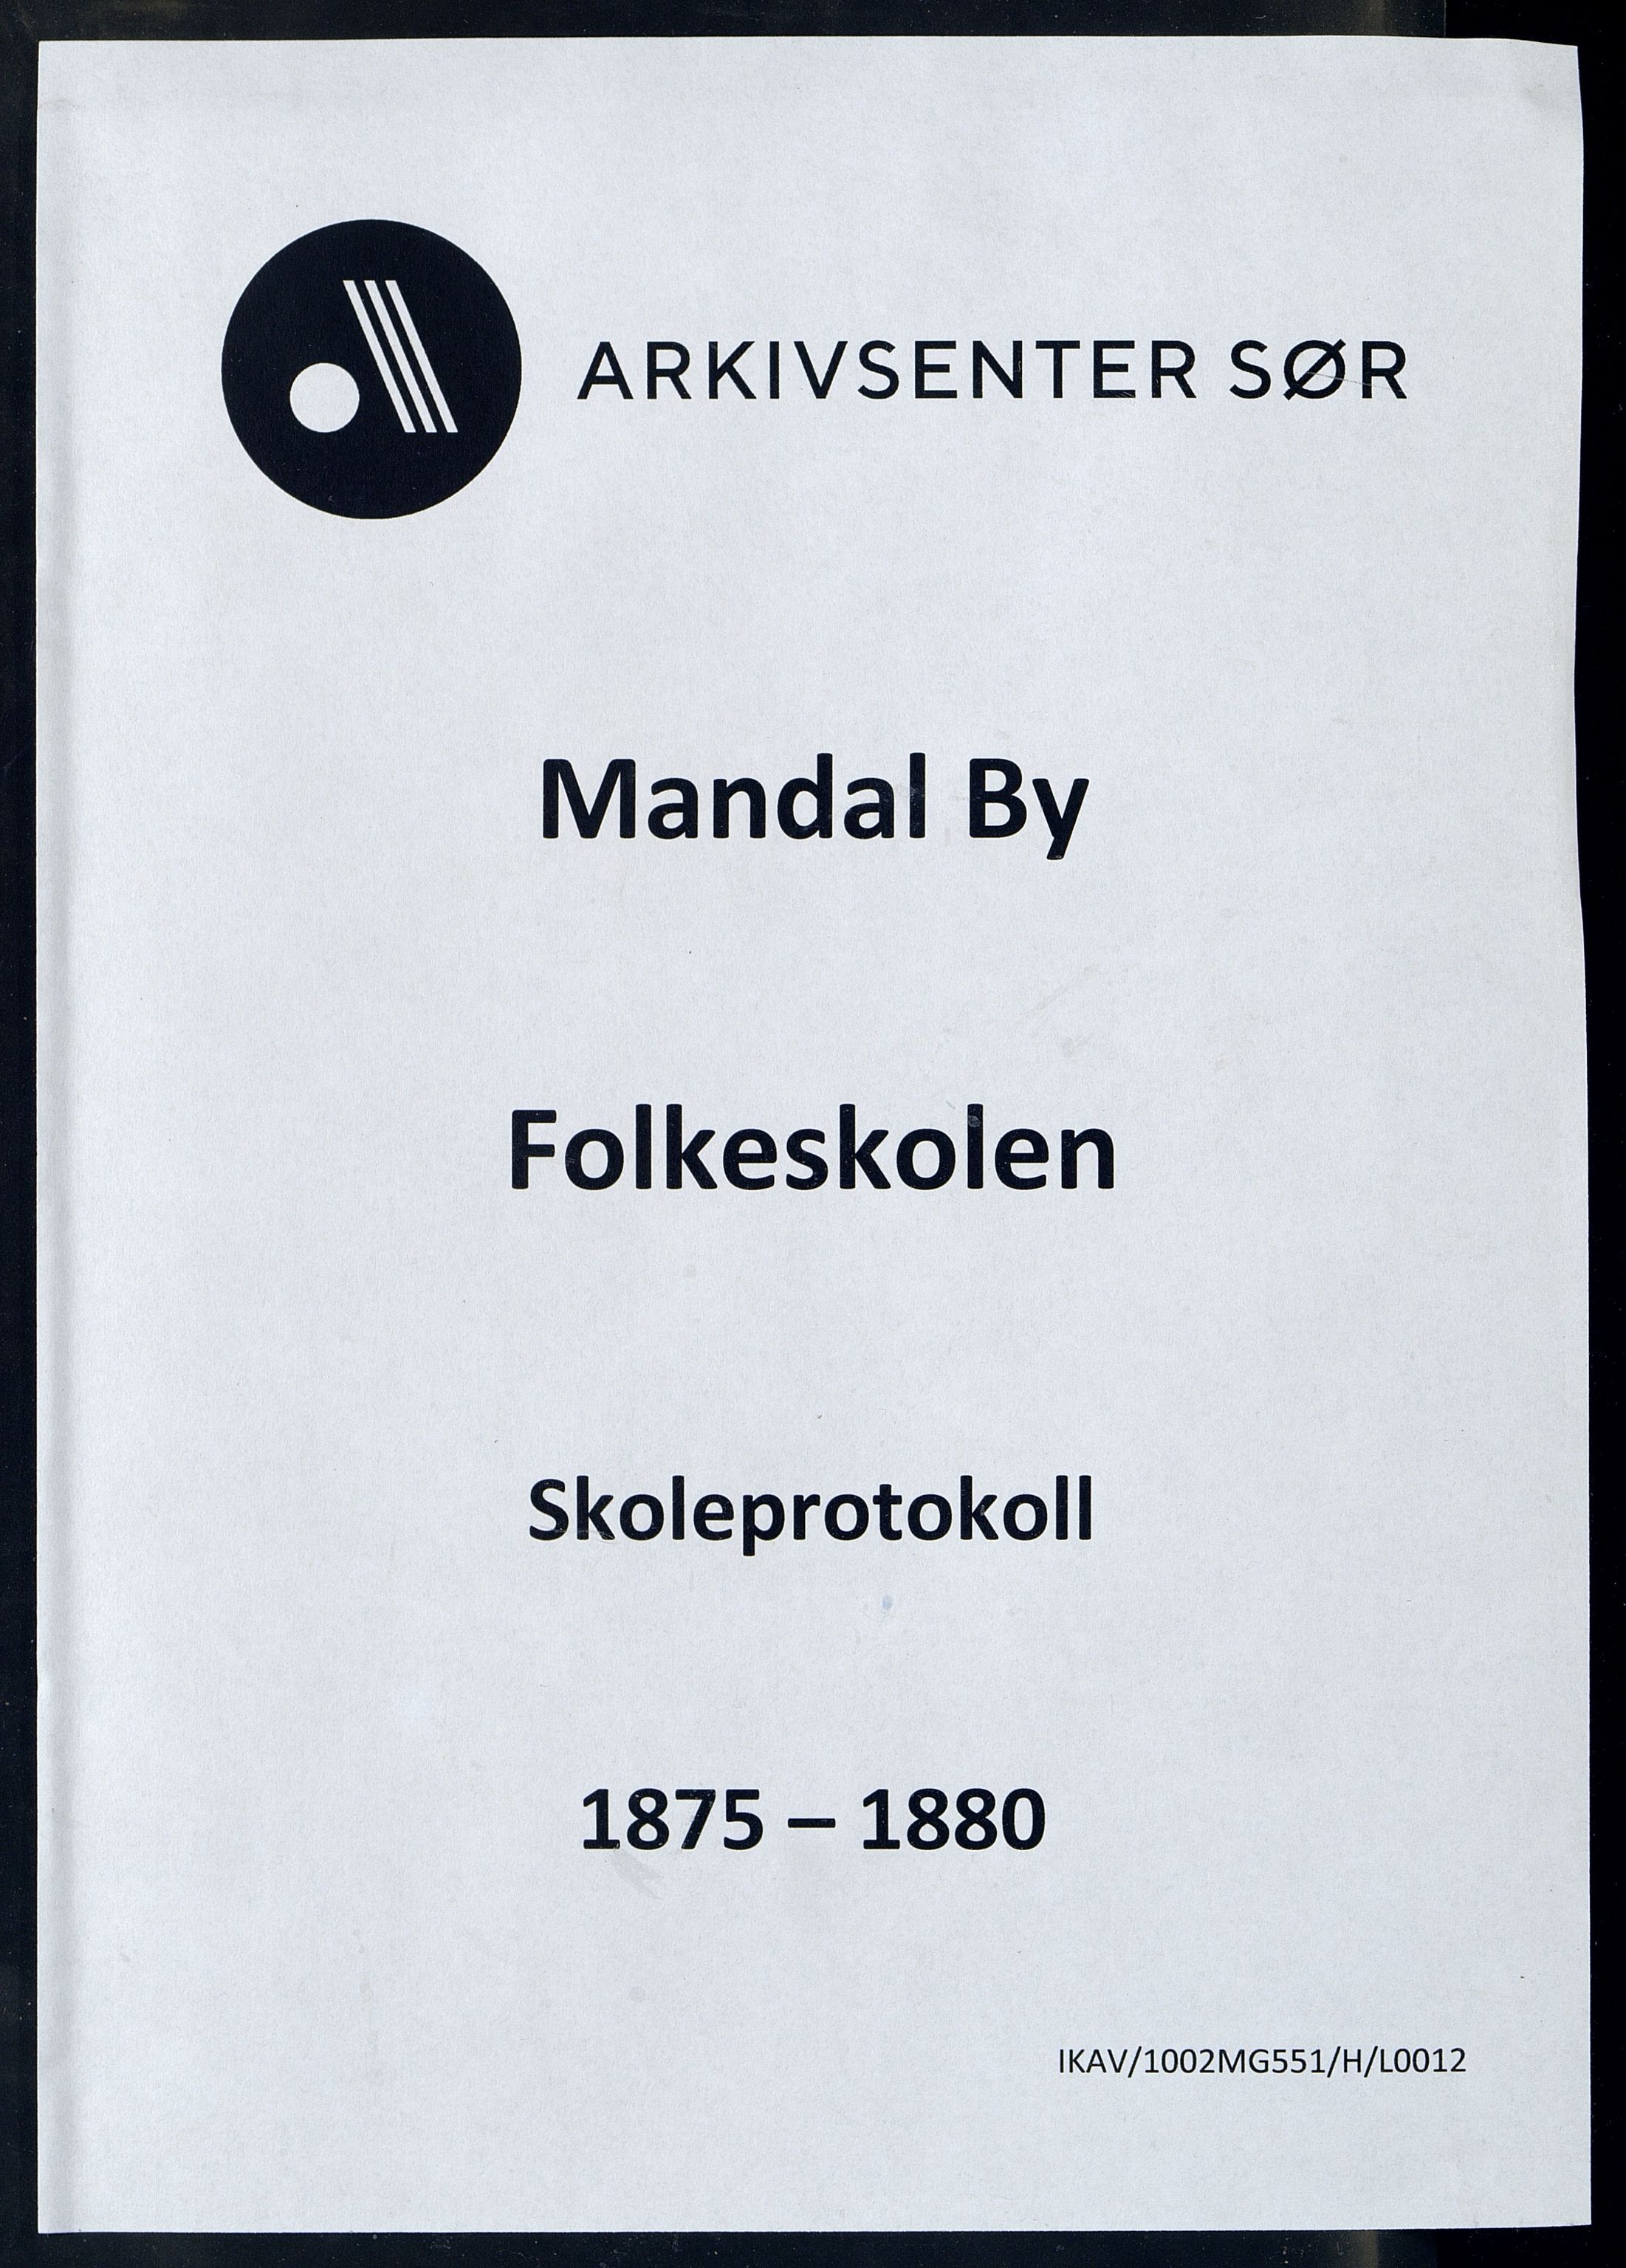 Mandal By - Mandal Allmueskole/Folkeskole/Skole, IKAV/1002MG551/H/L0012: Skoleprotokoll, 1875-1880